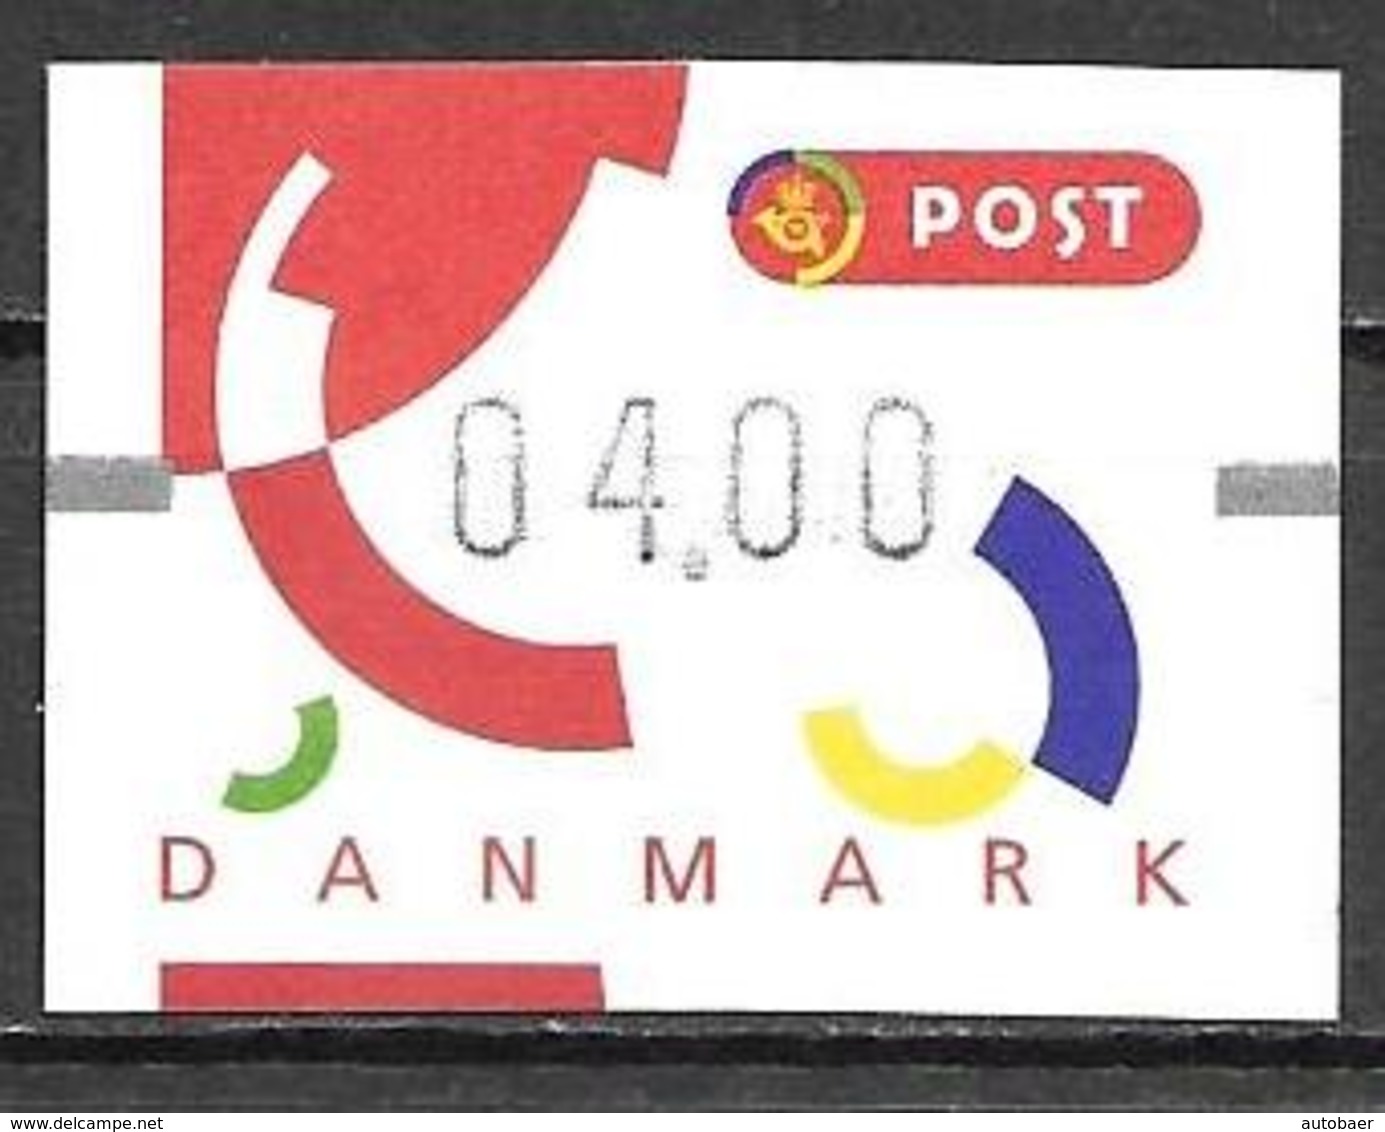 Denmark Danmark Dänemark 1995 ATM Franking Labels Vignettes D'Affranchissement Michel No. 4 MNH Mint Neuf Postfrisch ** - Automatenmarken [ATM]